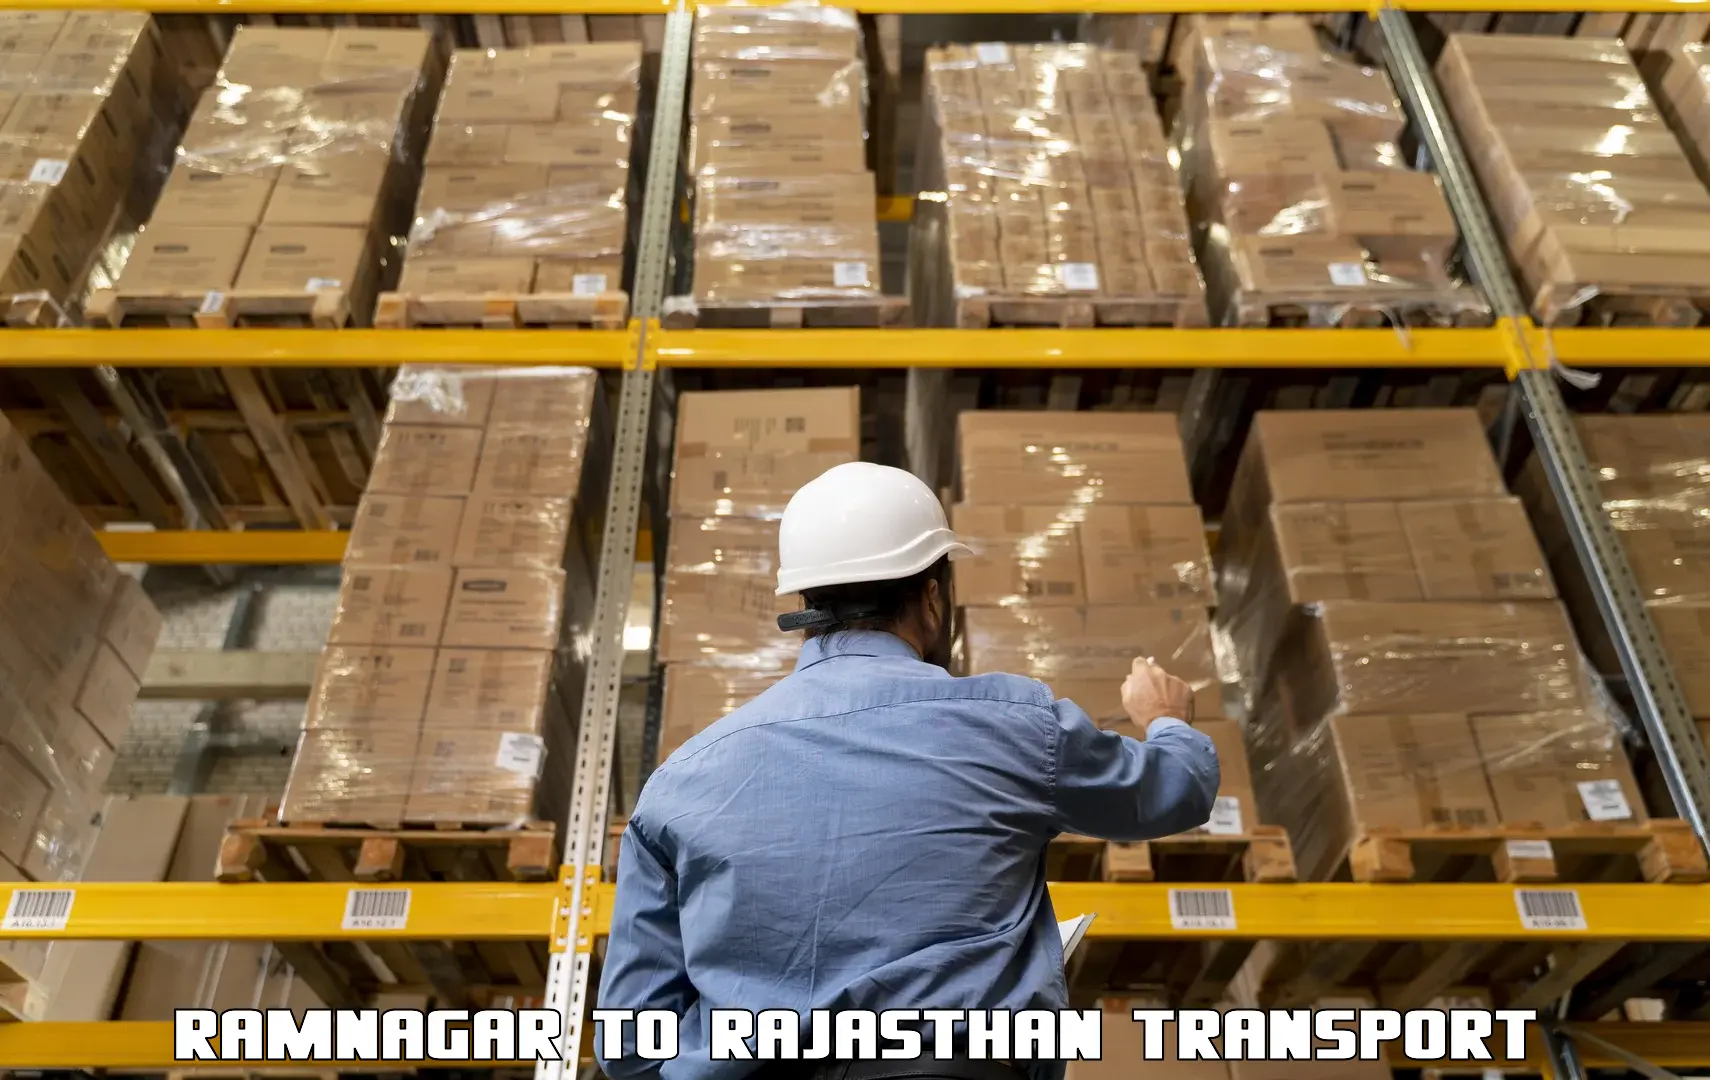 Shipping partner Ramnagar to IIT Jodhpur